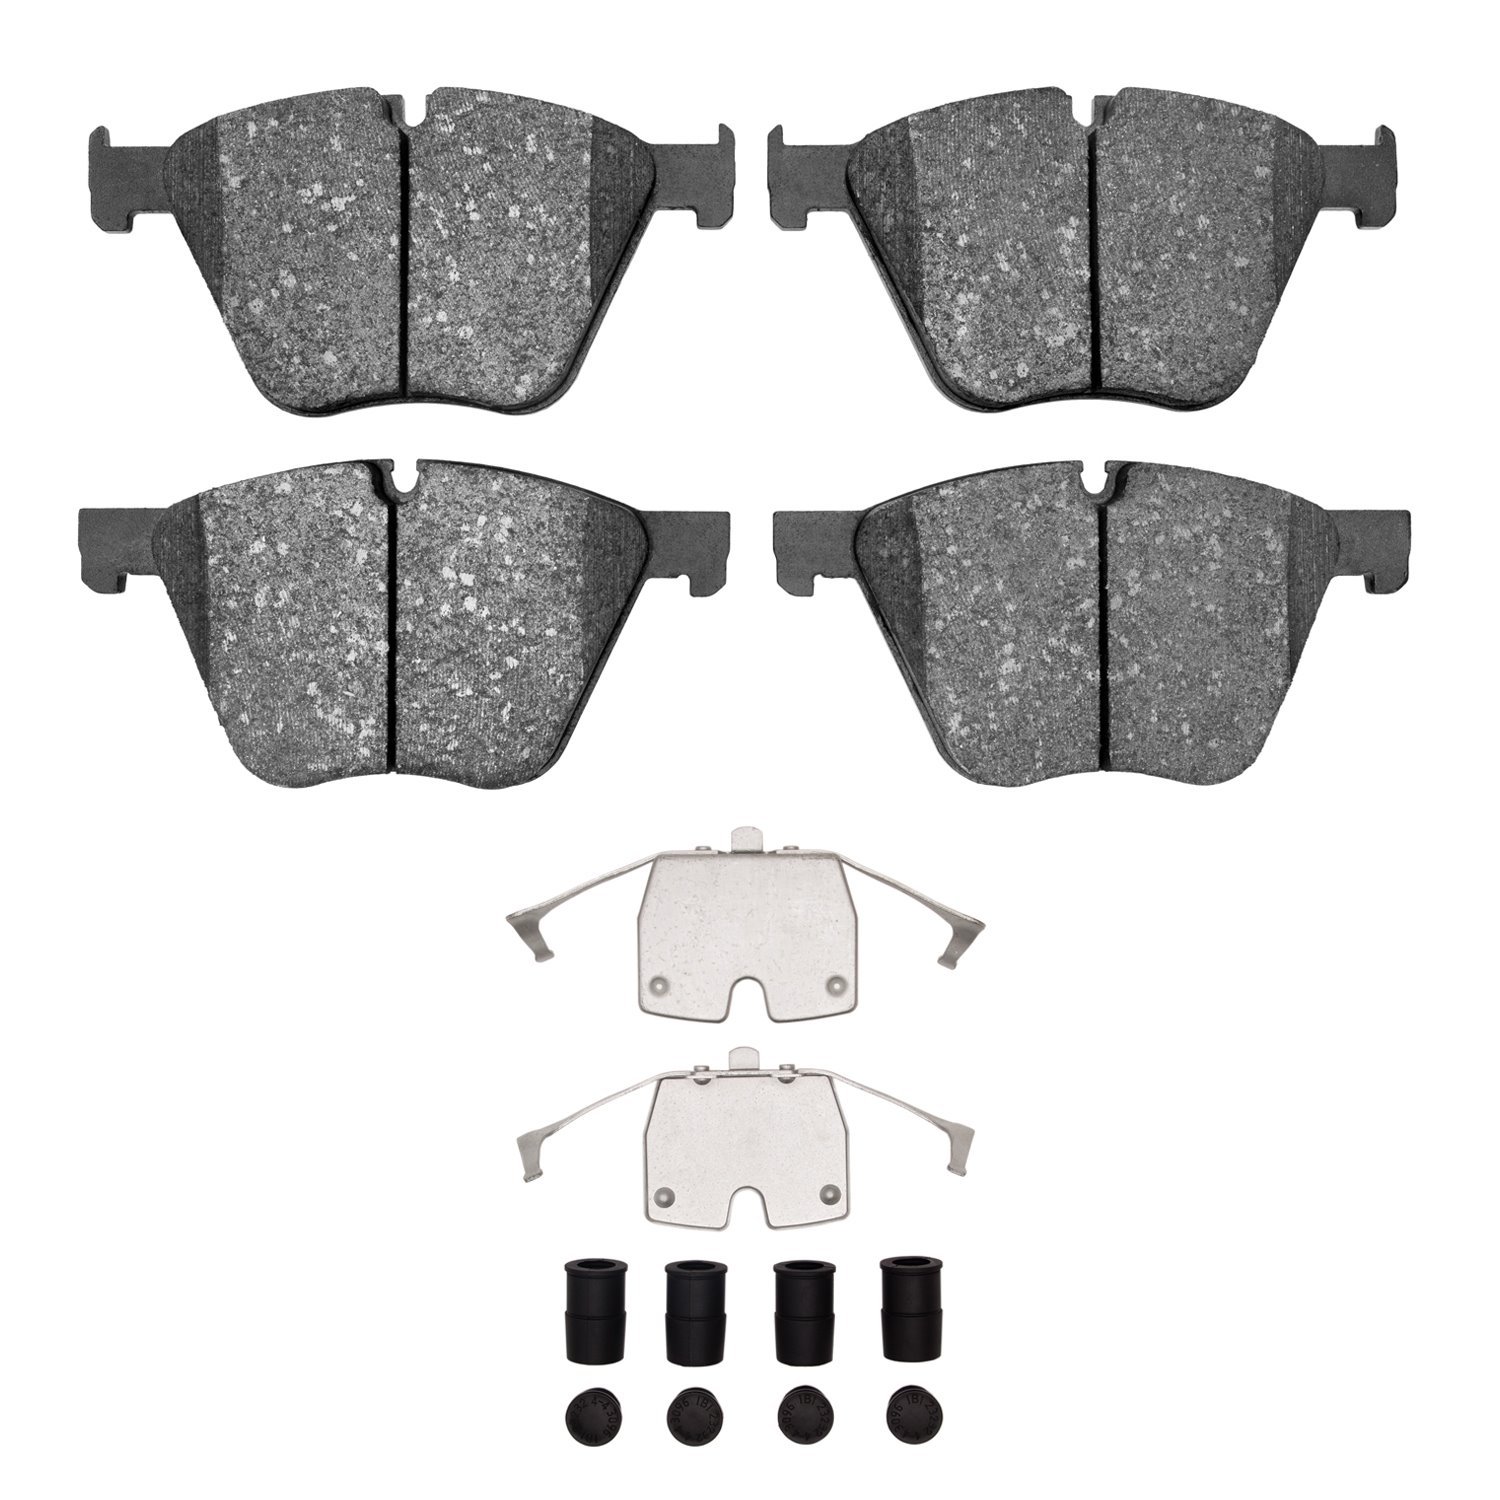 1311-1443-01 3000-Series Semi-Metallic Brake Pads & Hardware Kit, 2010-2019 BMW, Position: Front